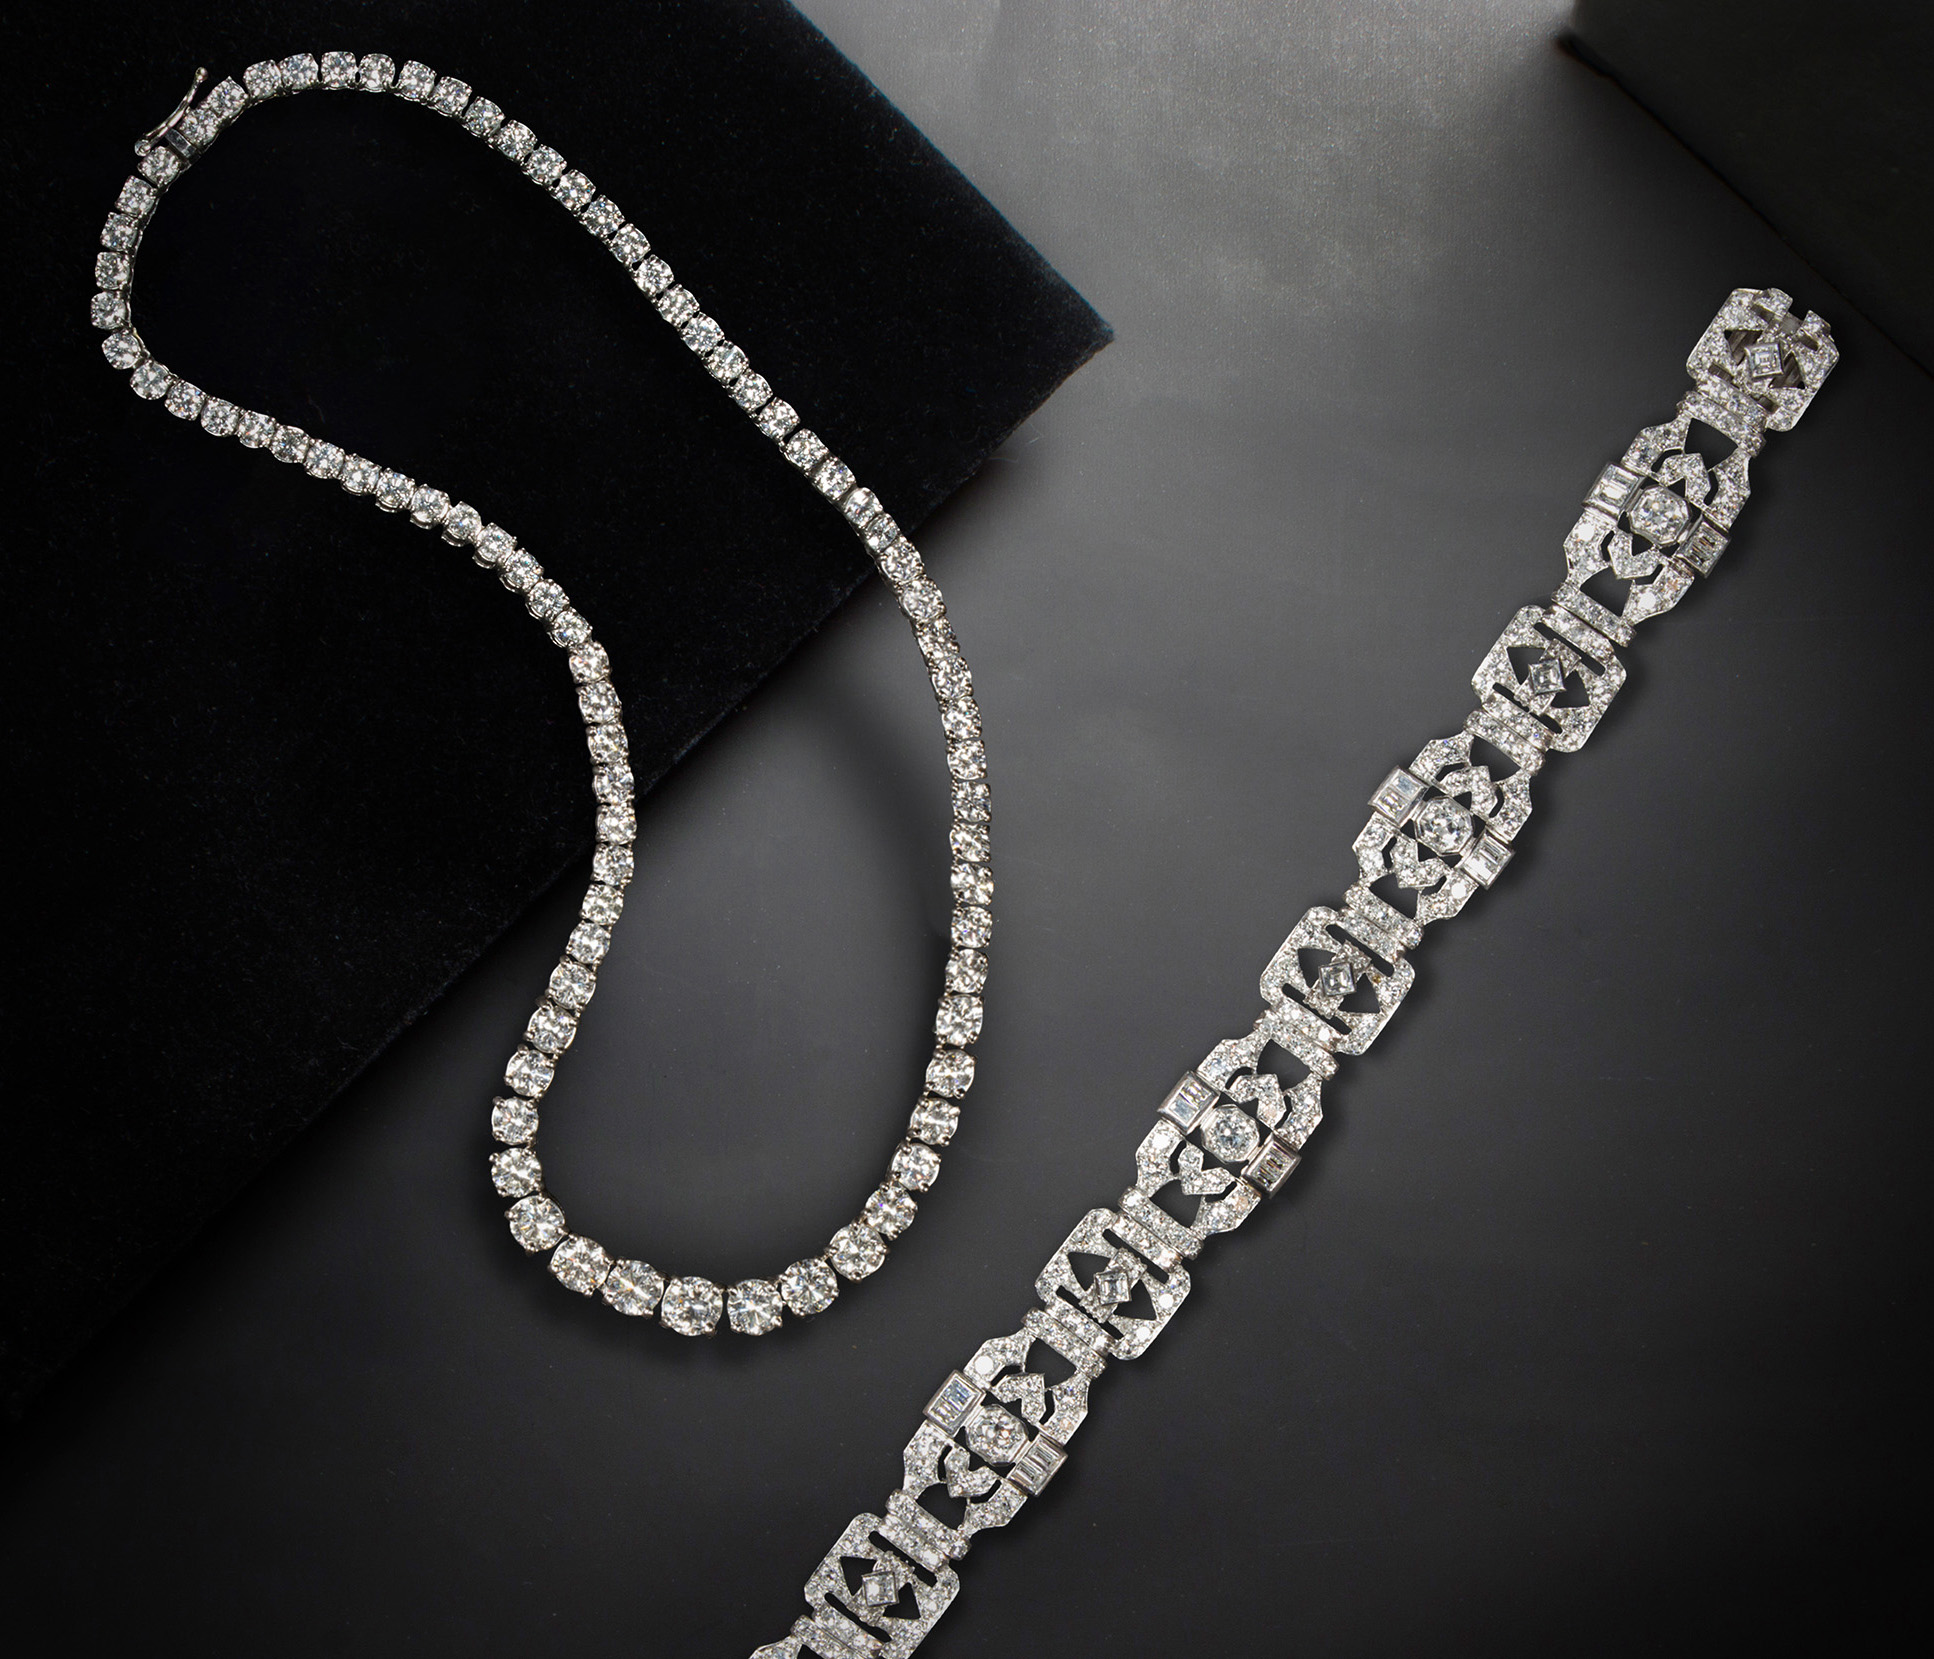 Left: A diamond and platinum rivière necklace. Right: A diamond and platinum bracelet.